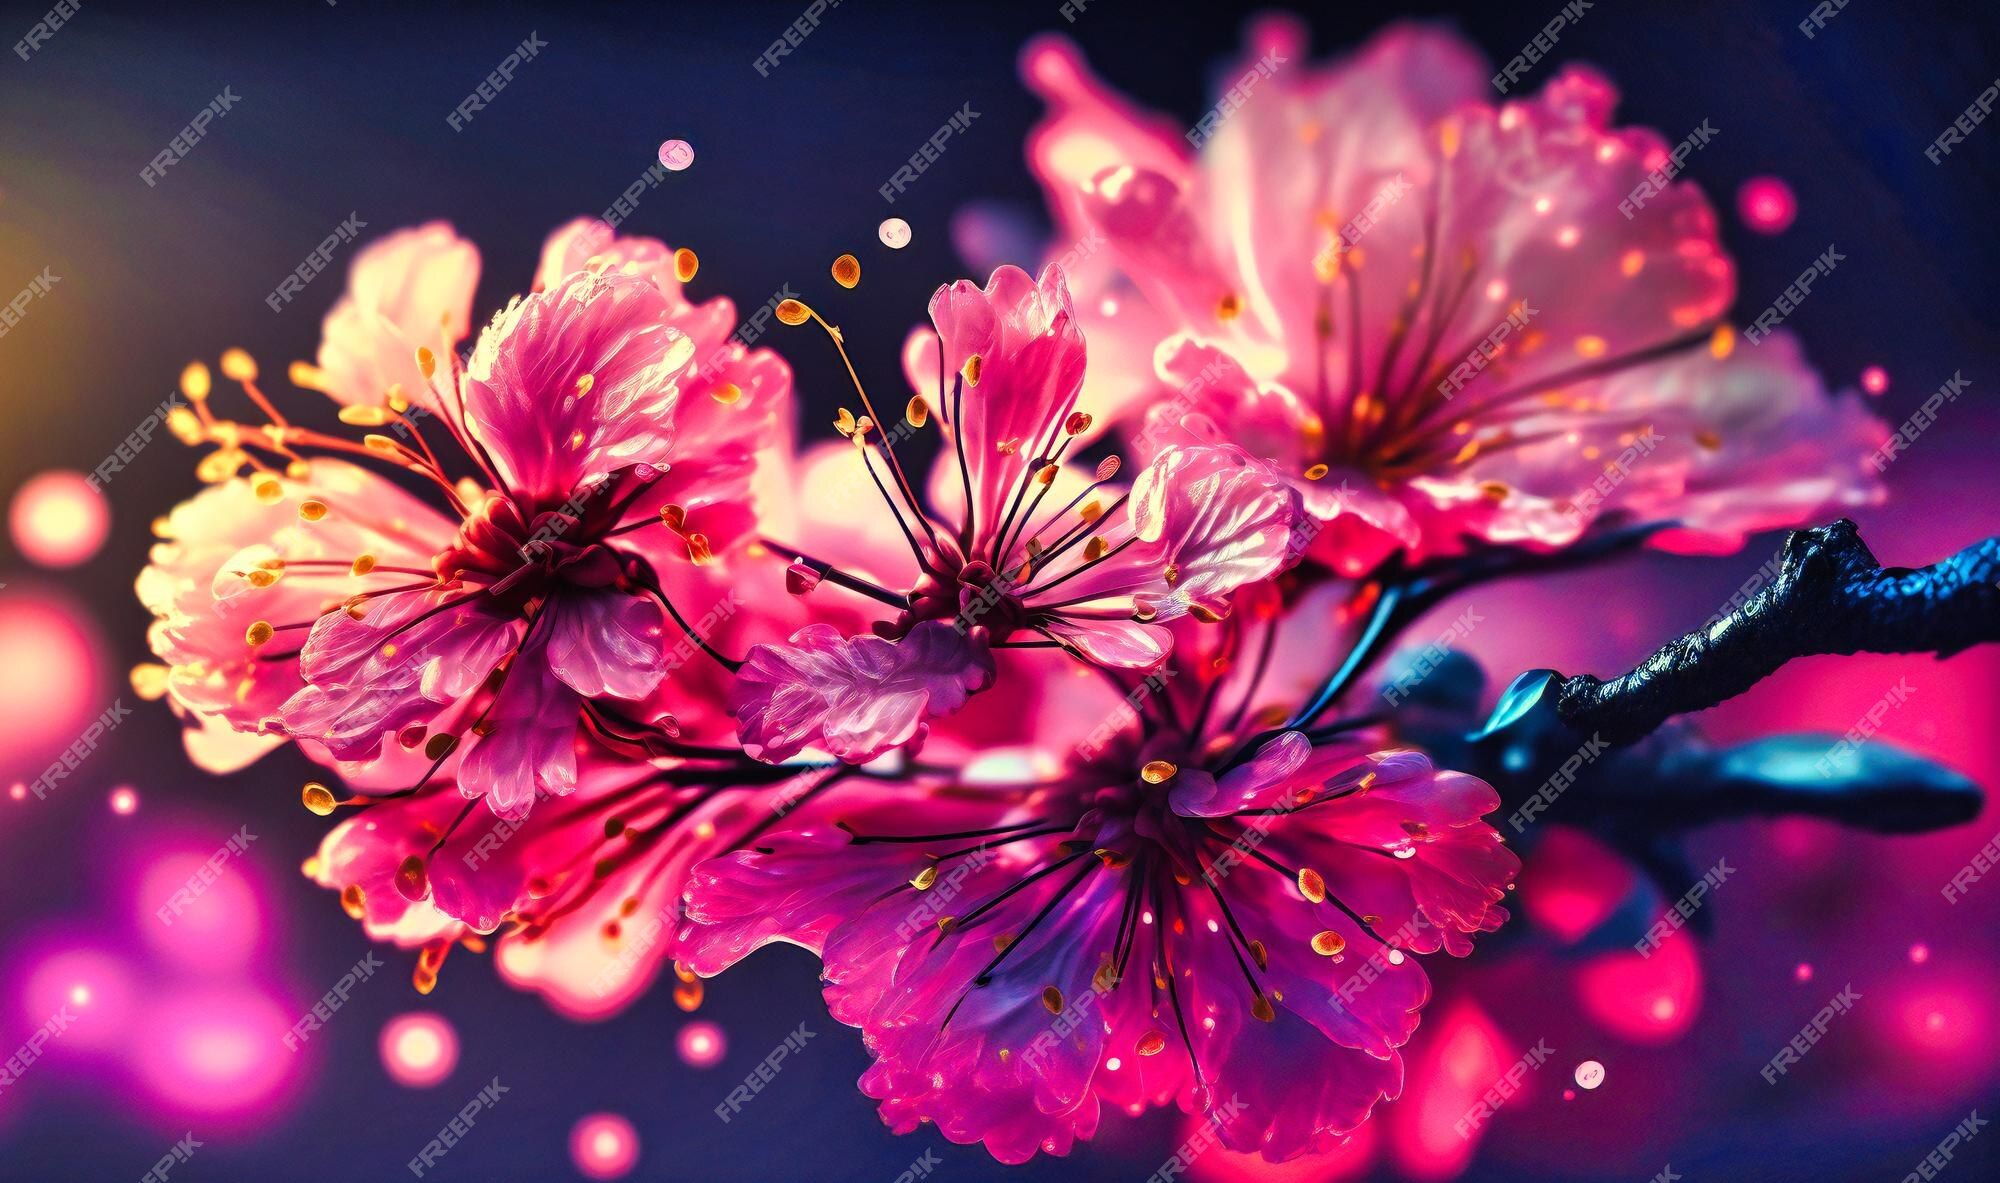  Ruhiges Hintergrundbild 2000x1183. Ein ruhiges und poetisches bild, das an die zarte schönheit der rosa kirschblüten in voller blüte erinnert und erneuerung und hoffnung symbolisiert